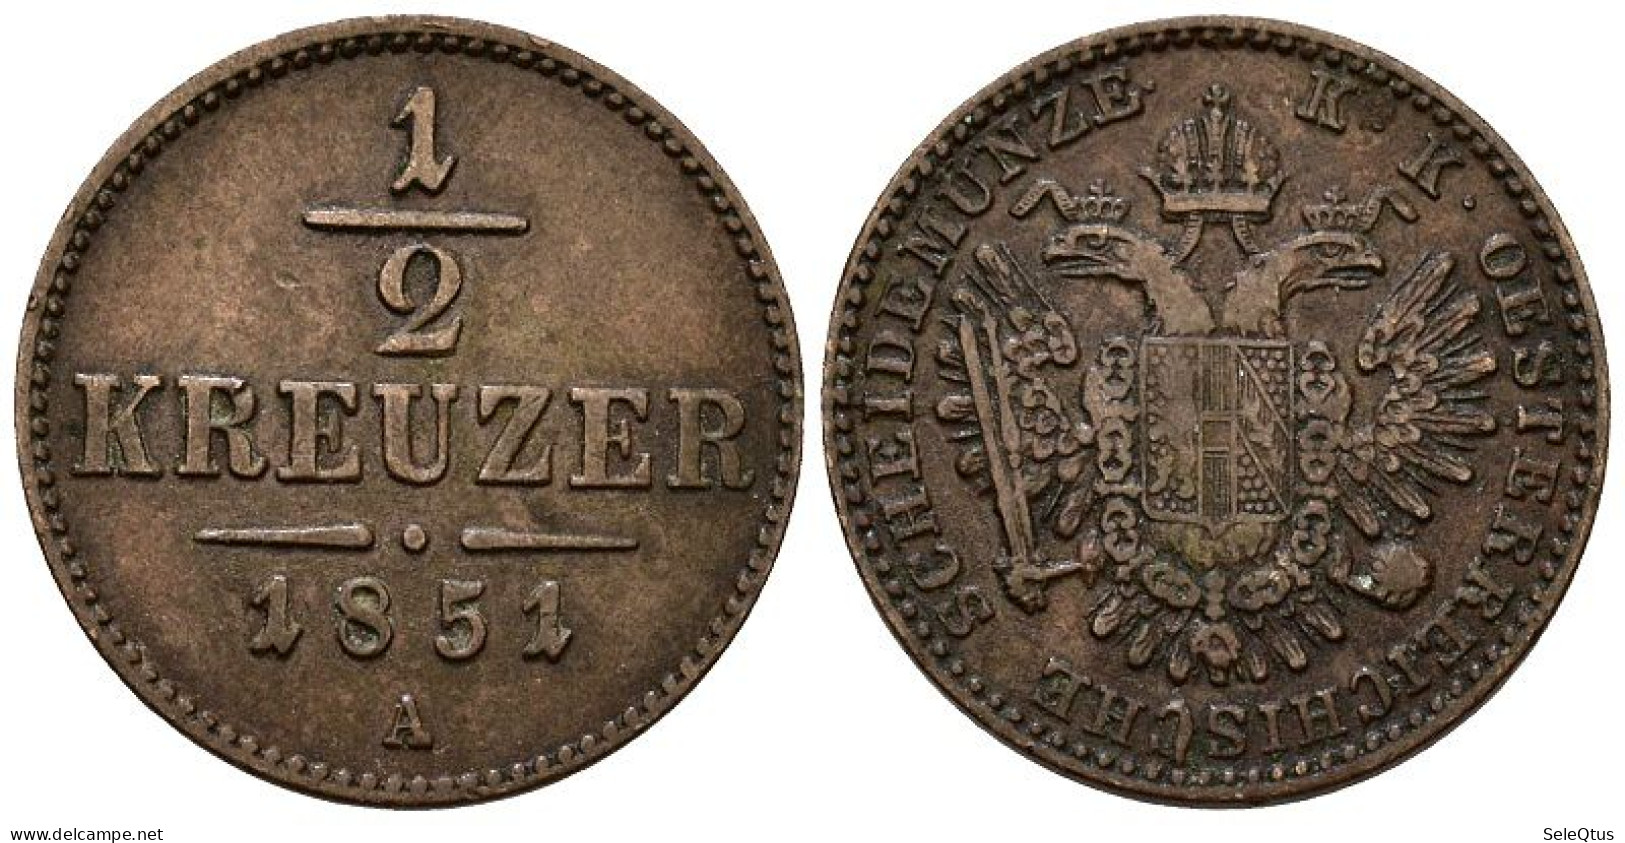 Monedas Antiguas - Ancient Coins (00123-007-1090) - Oesterreich